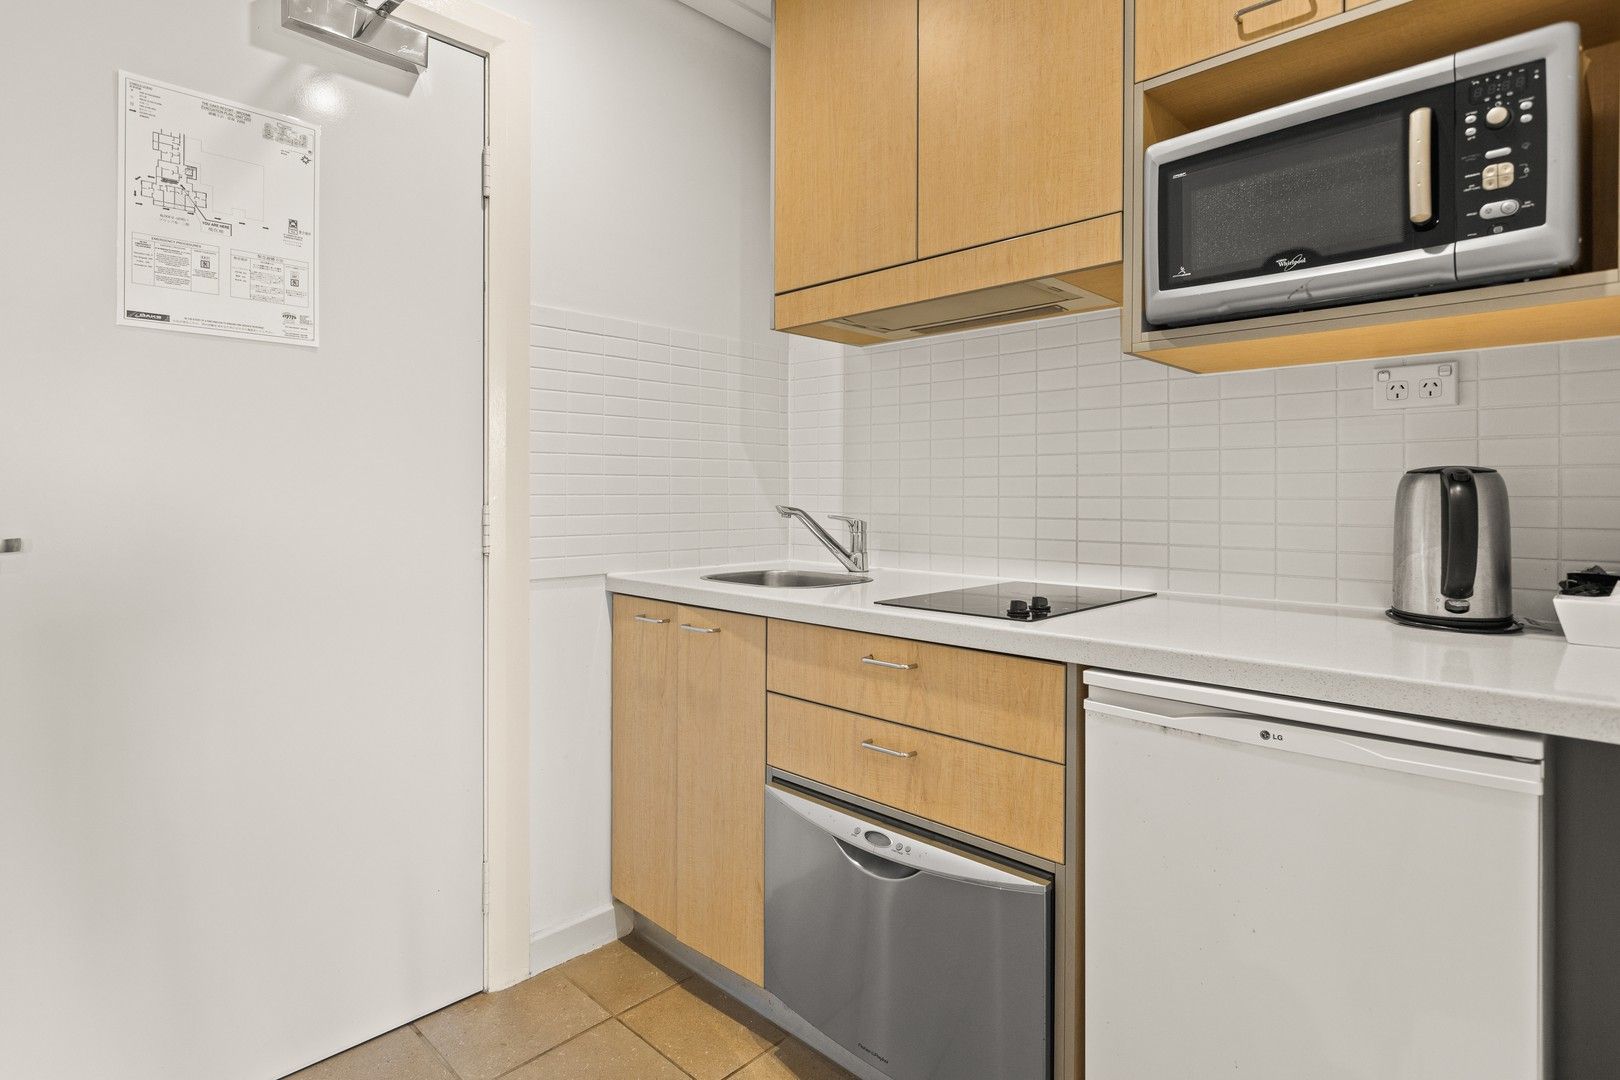 1 bedrooms Apartment / Unit / Flat in 37 & 38 / 99 Robinson Street Broome WA 6725 BROOME WA, 6725